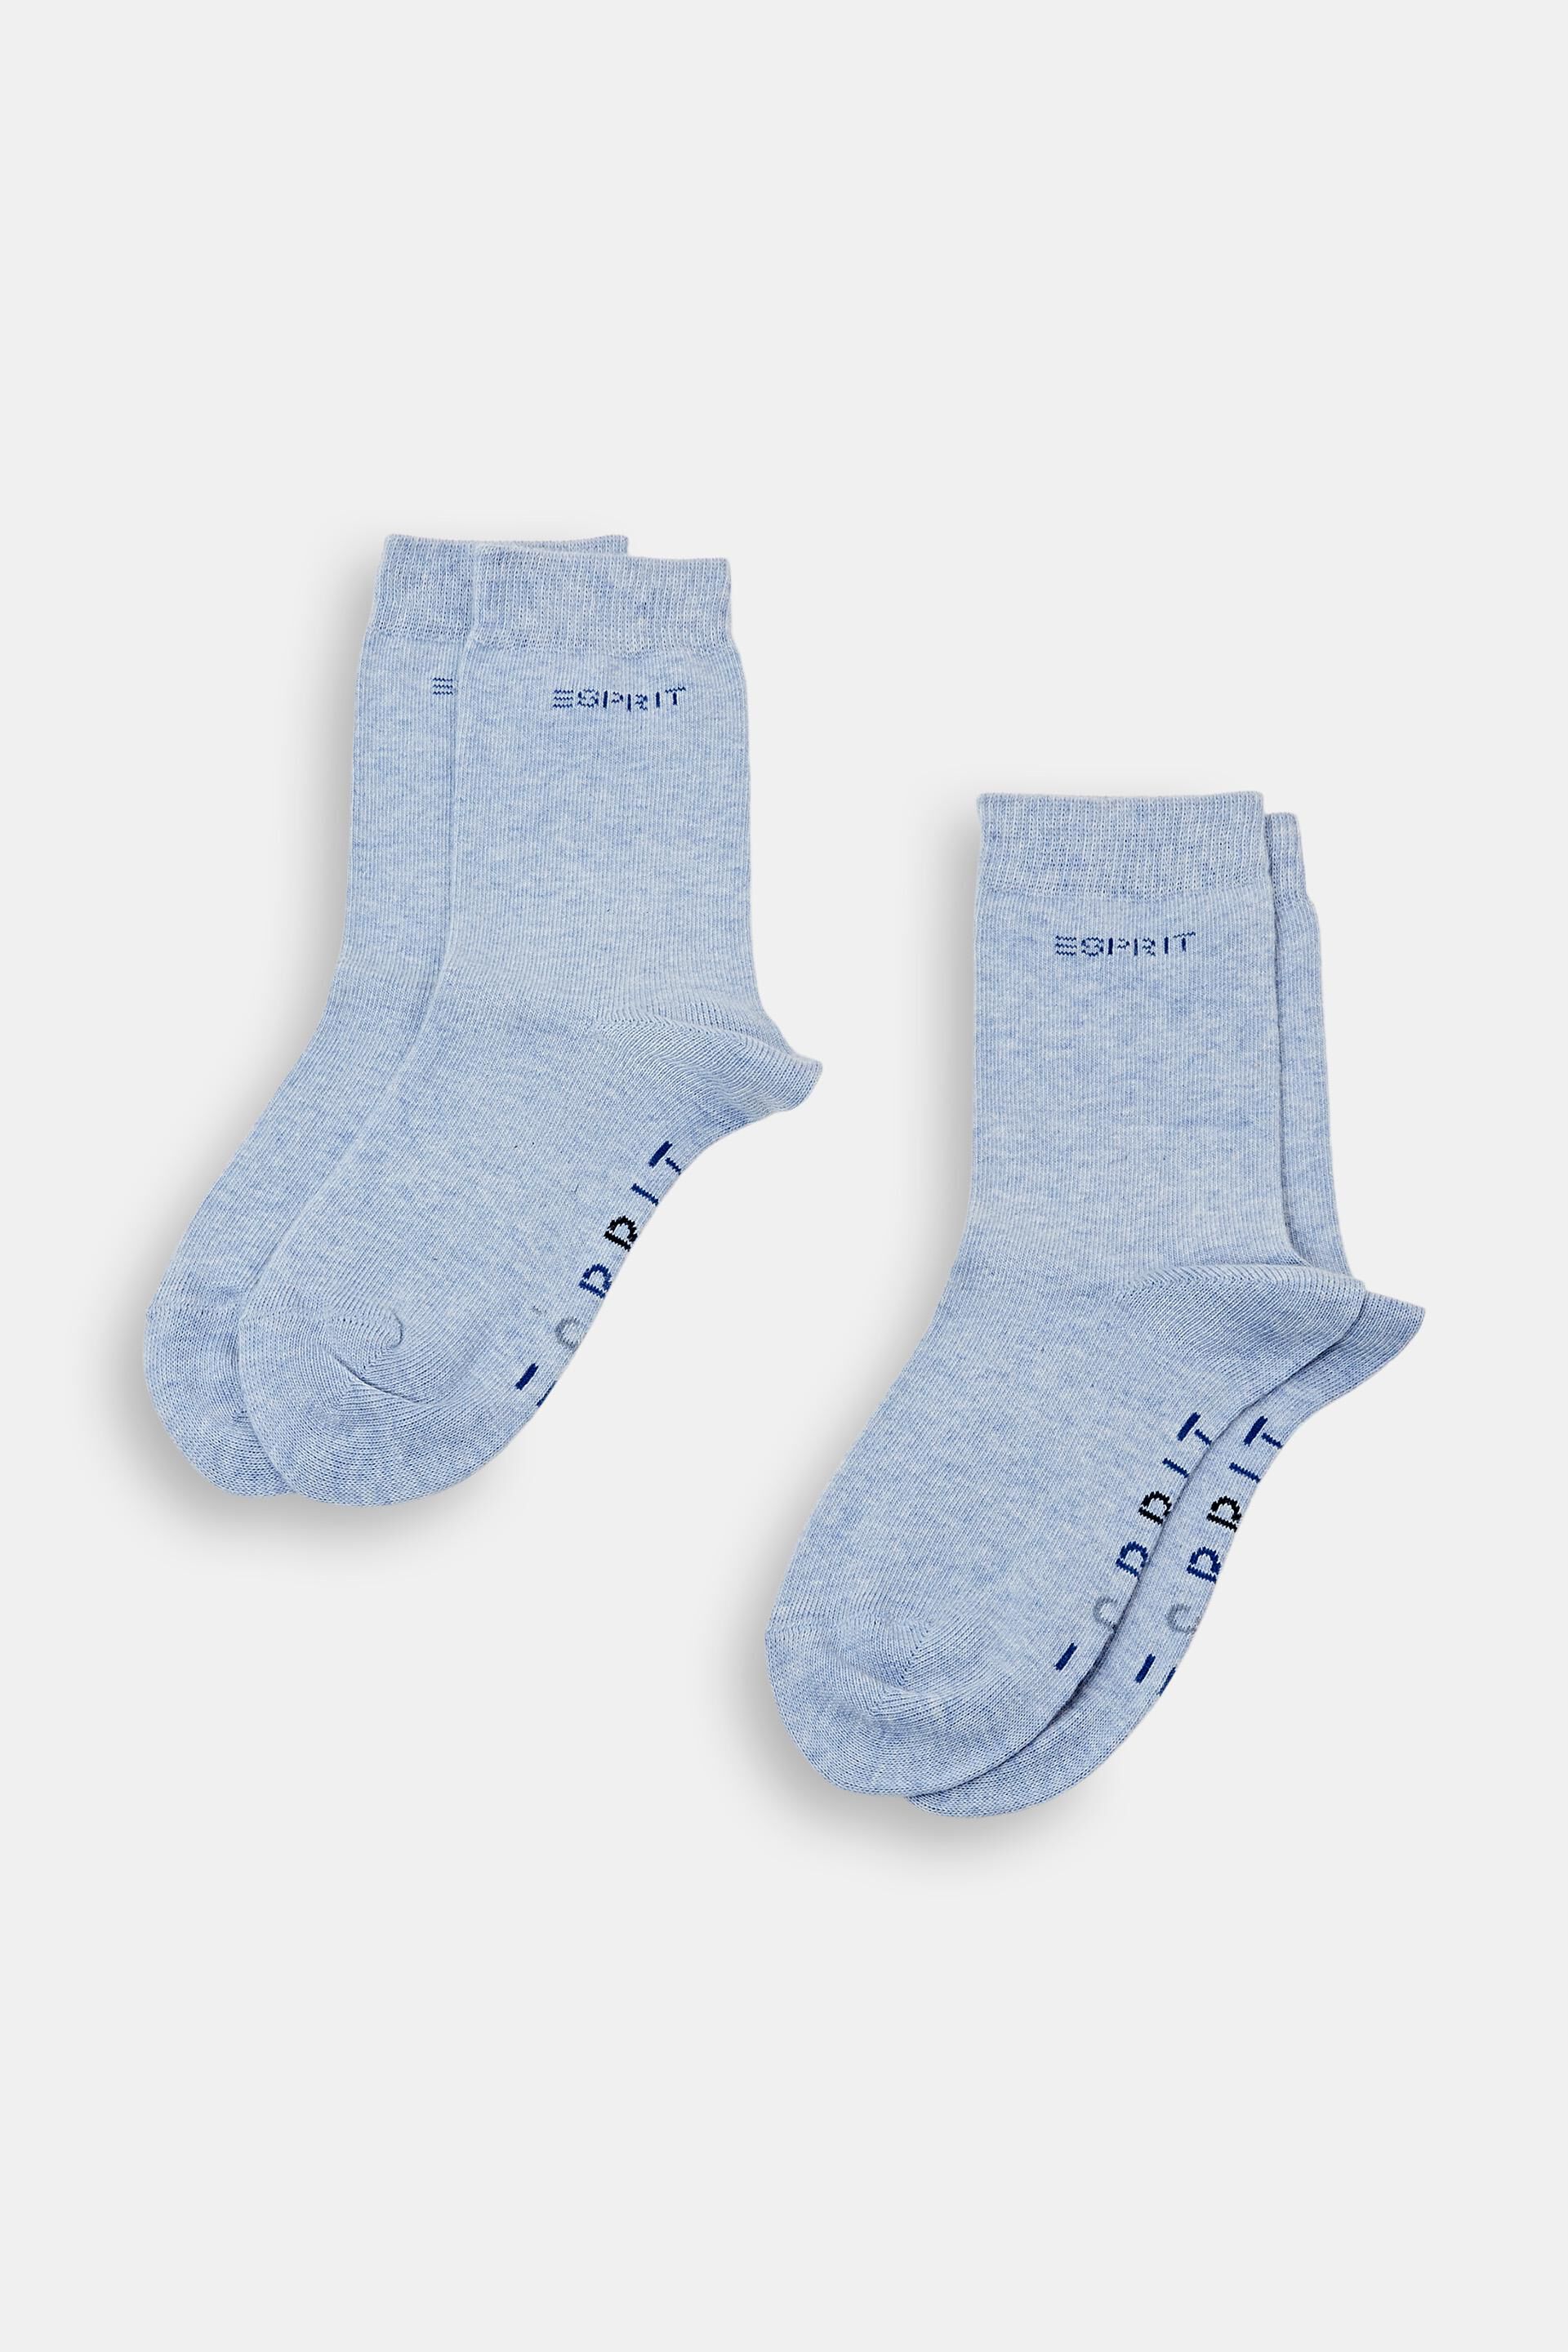 Esprit Teppich Kids' socks with logo